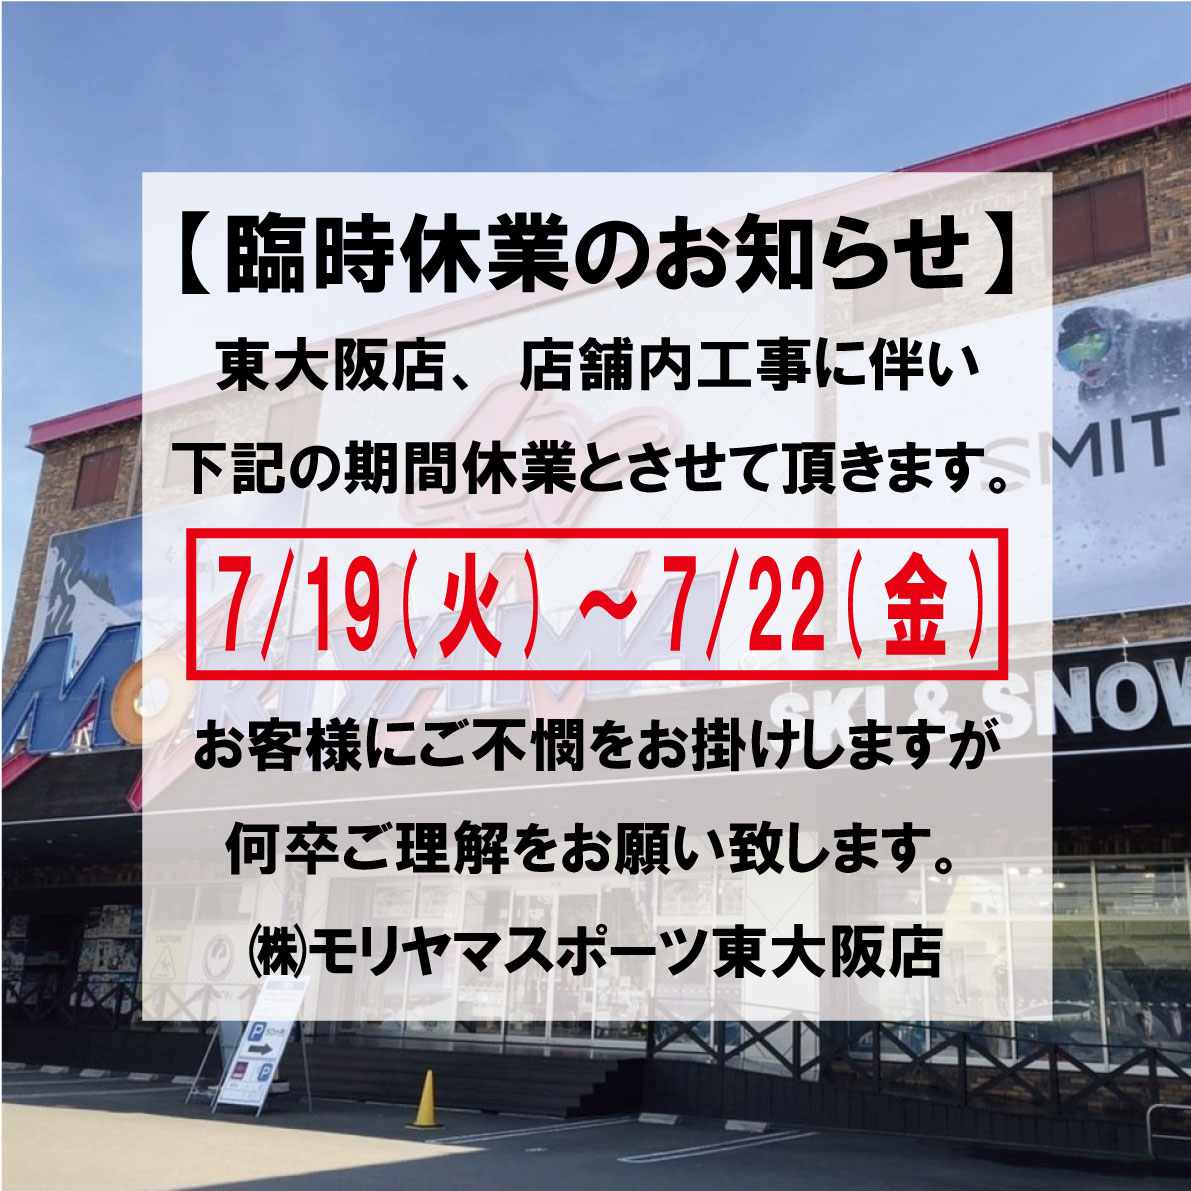 【モリスポウインター】モリスポ東大阪店臨時休業のお知らせ